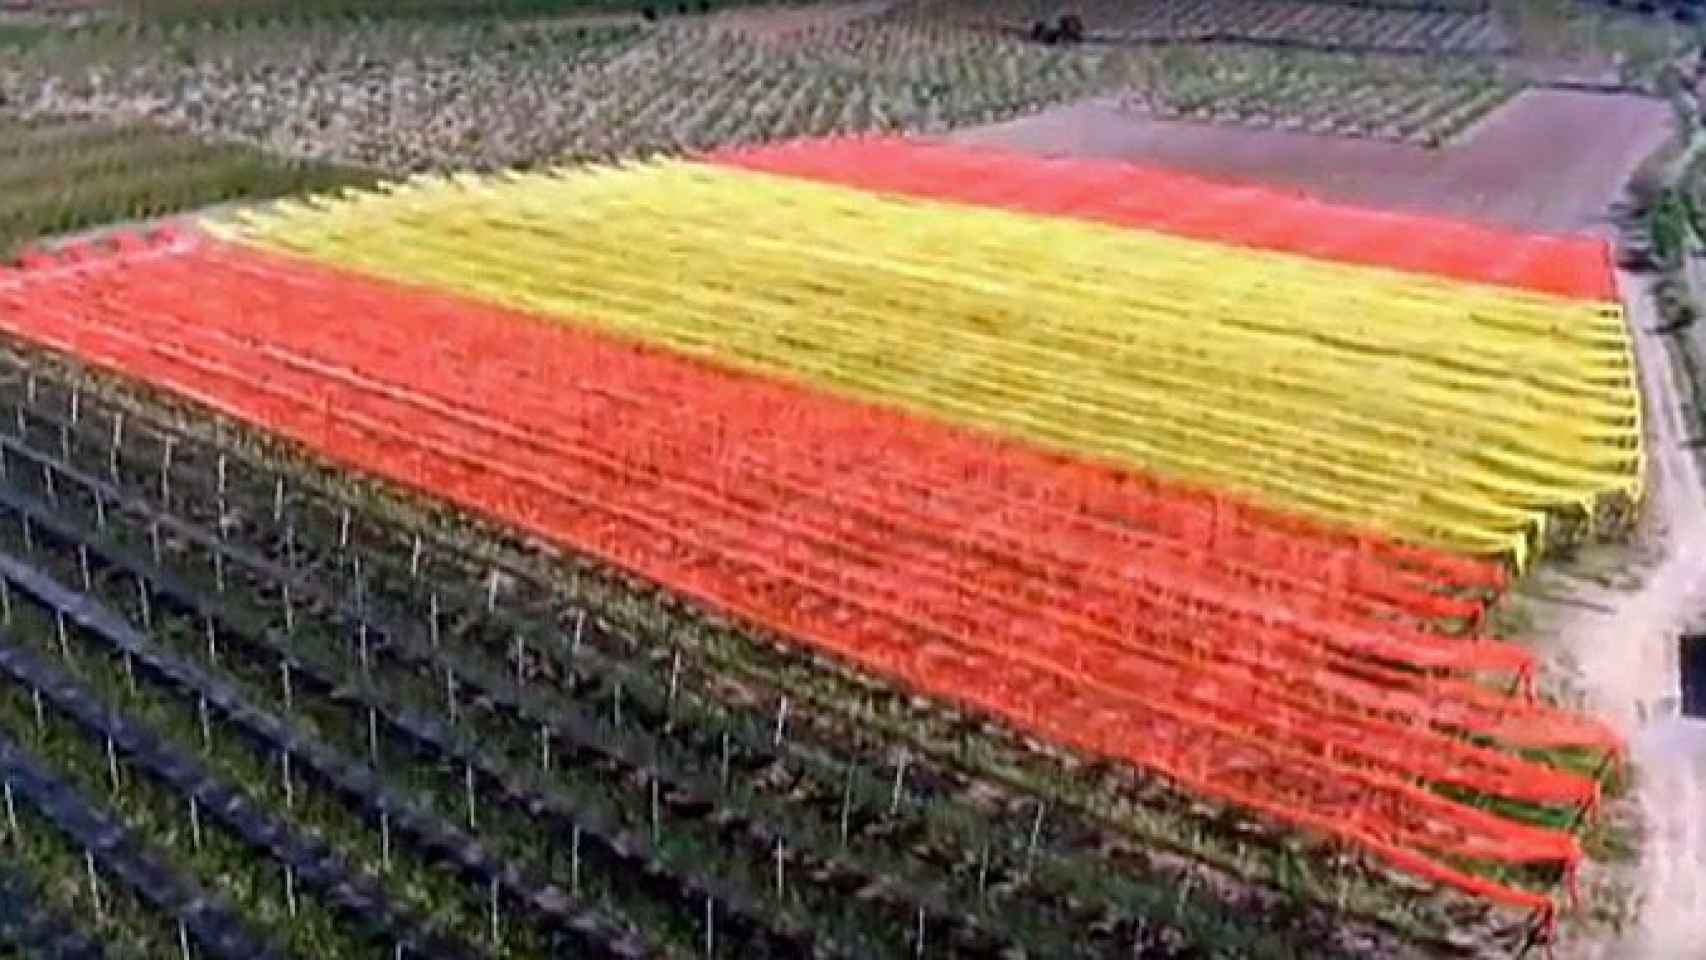 Un agricultor de Zaragoza forma una bandera de España de 22.000 m2